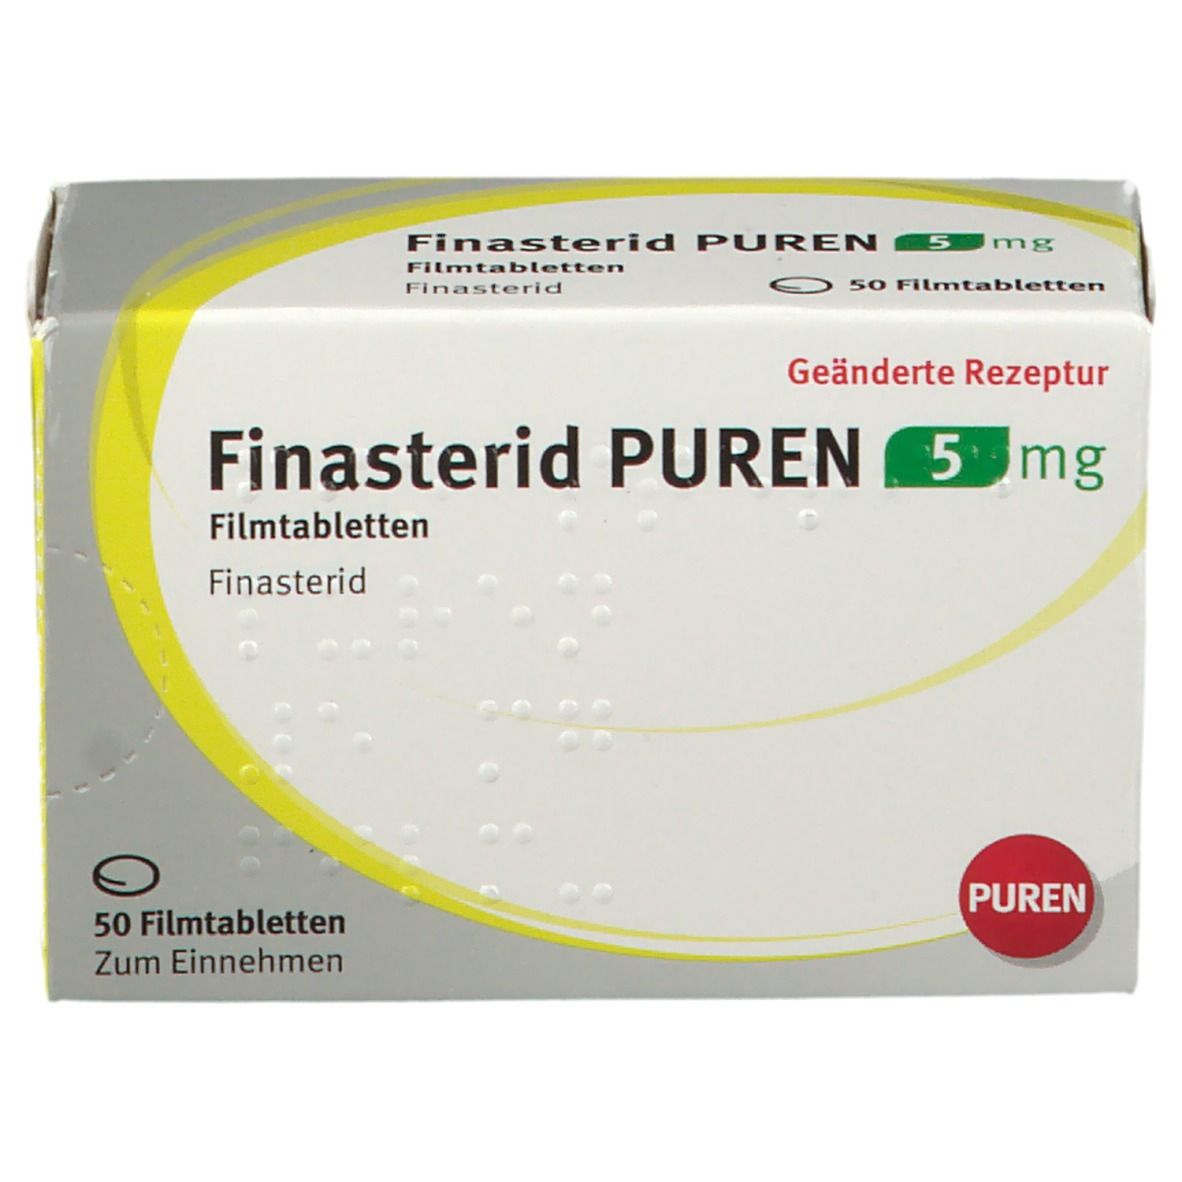 Finasterid PUREN 5 mg